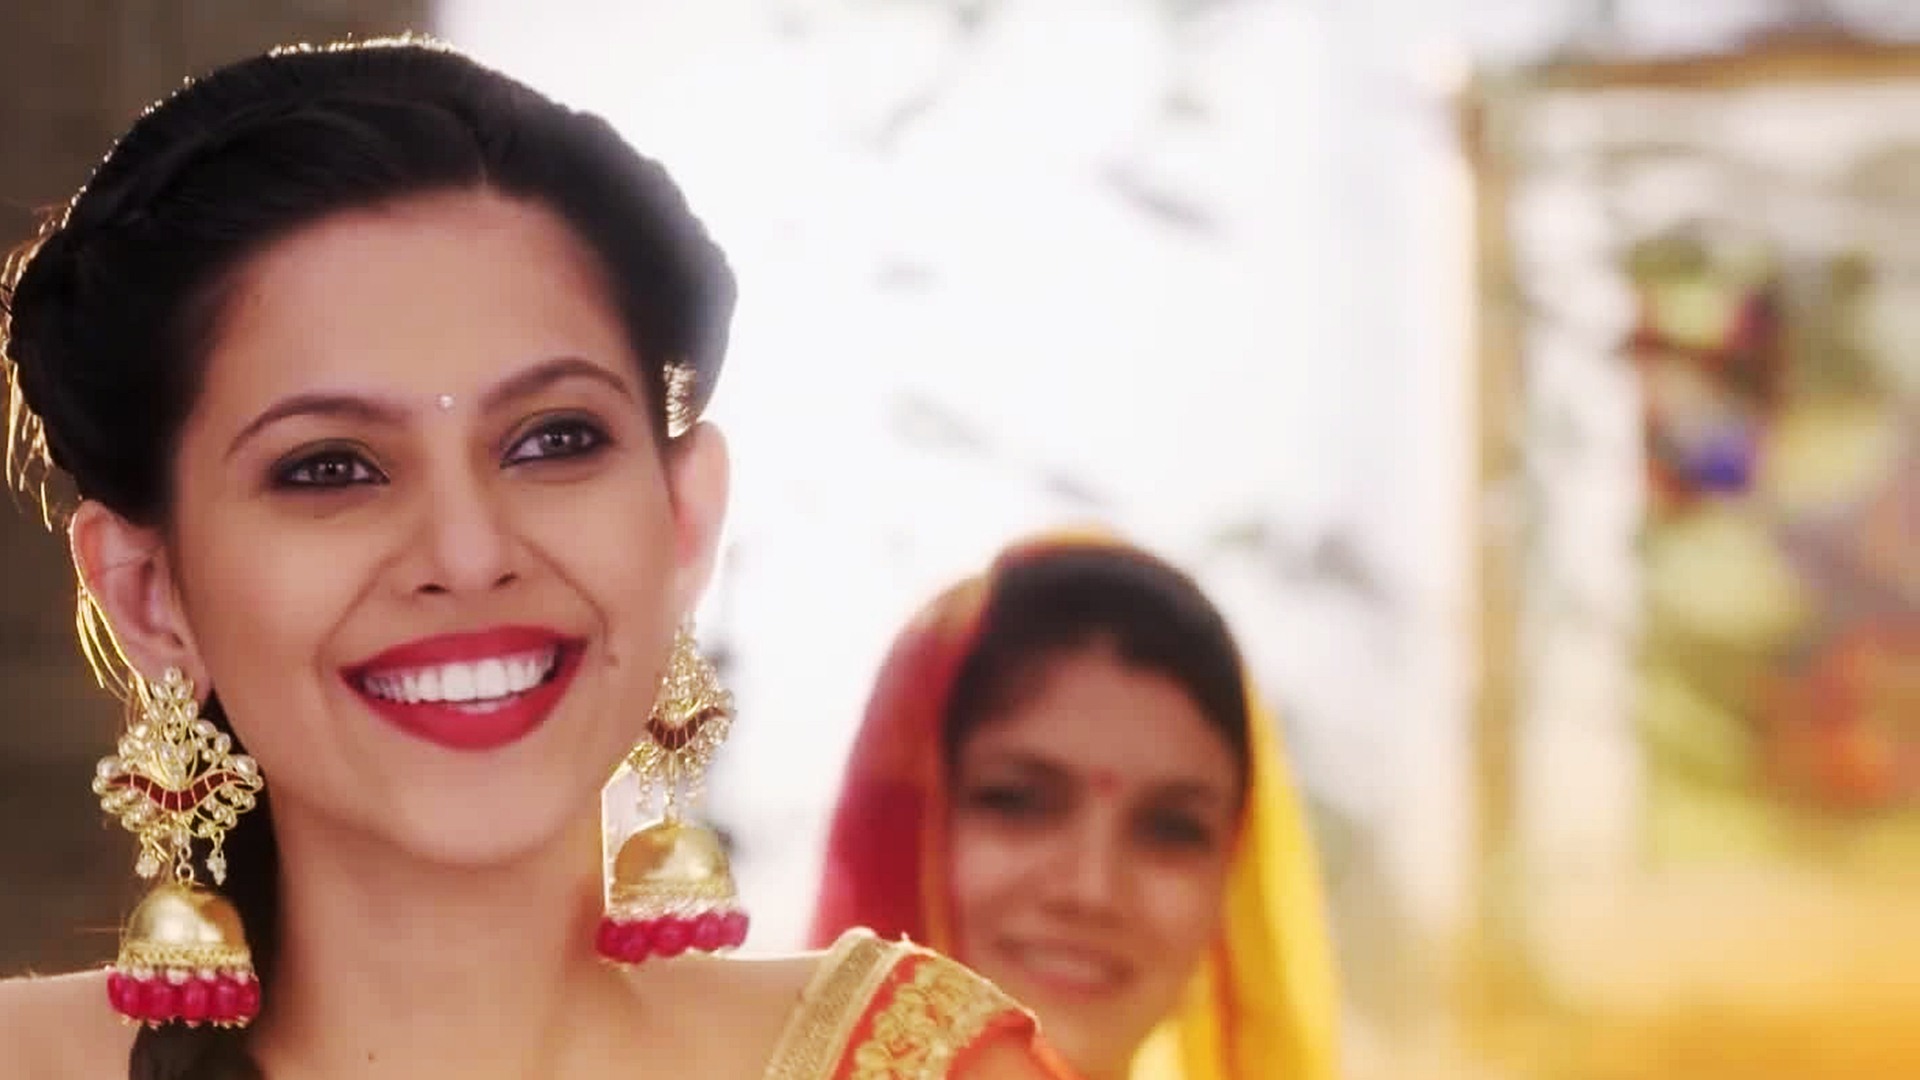 zee tv fond d'écran série,sari,beauté,tradition,sourire,amusement